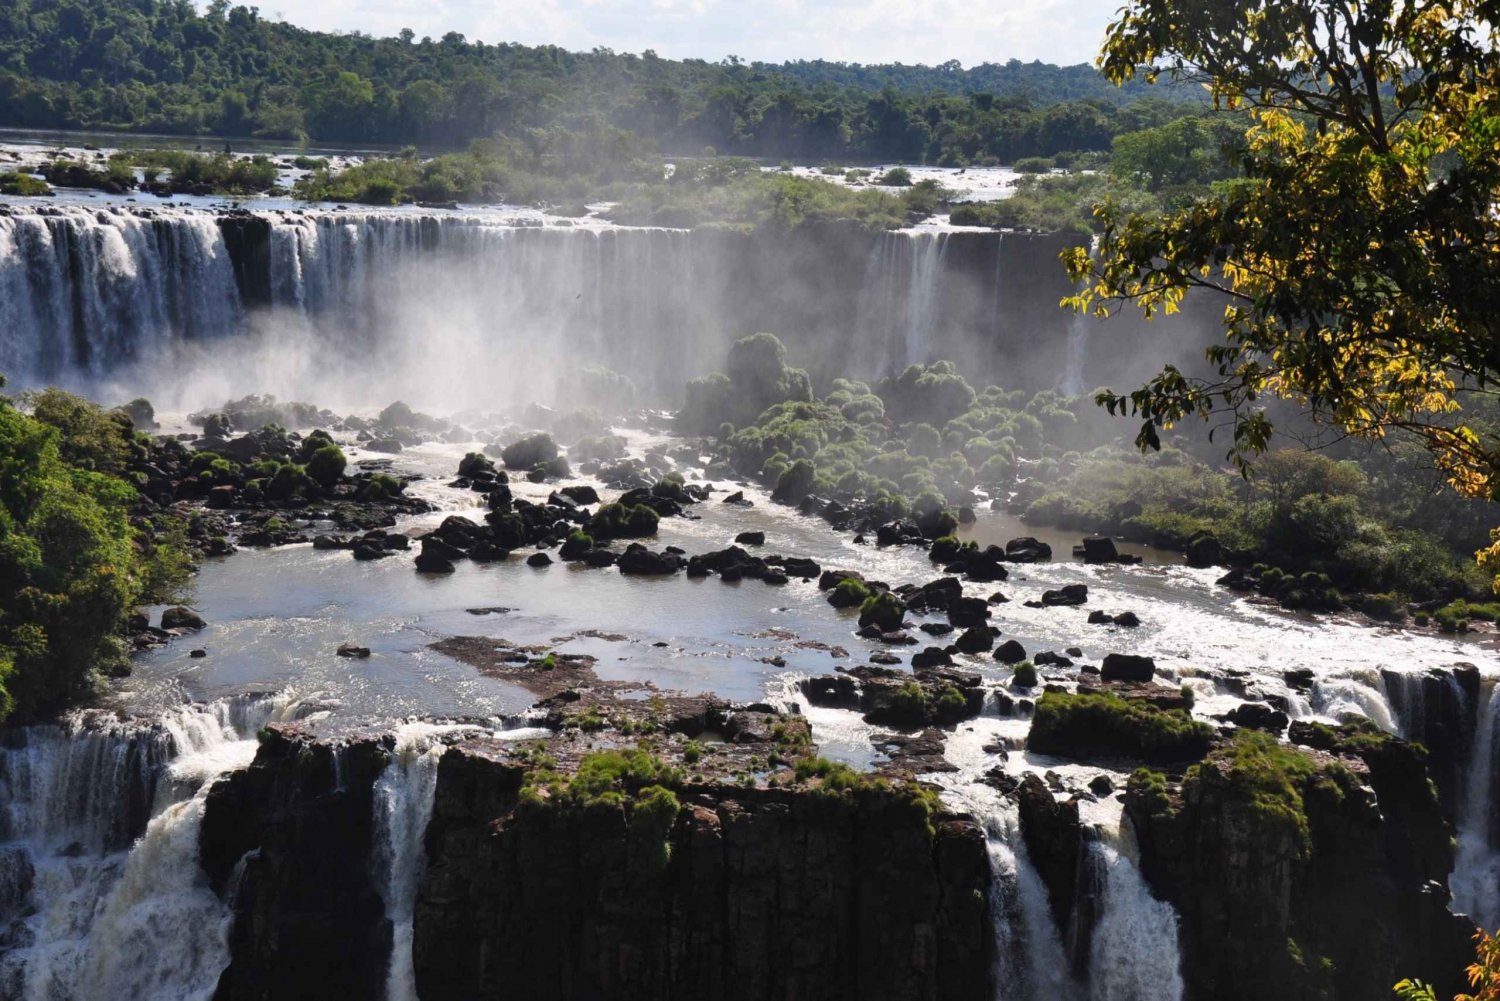 Fra Foz do Iguaçu: Besøk til de brasilianske fossefallene og fugleparken